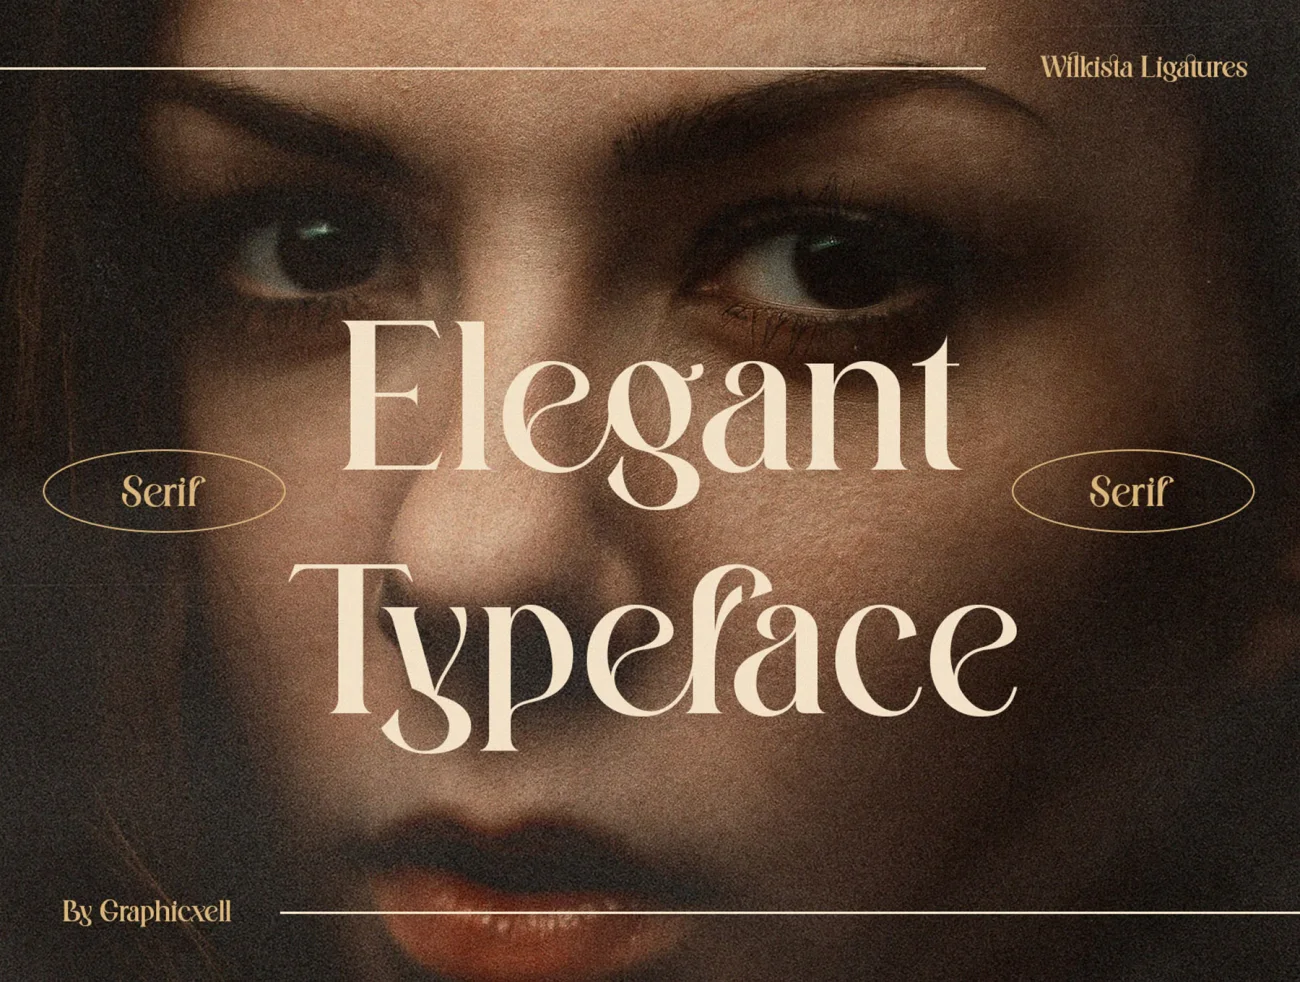 潮流时尚连字英文标题字体 Wilkista – Stylish Ligature Typeface插图9